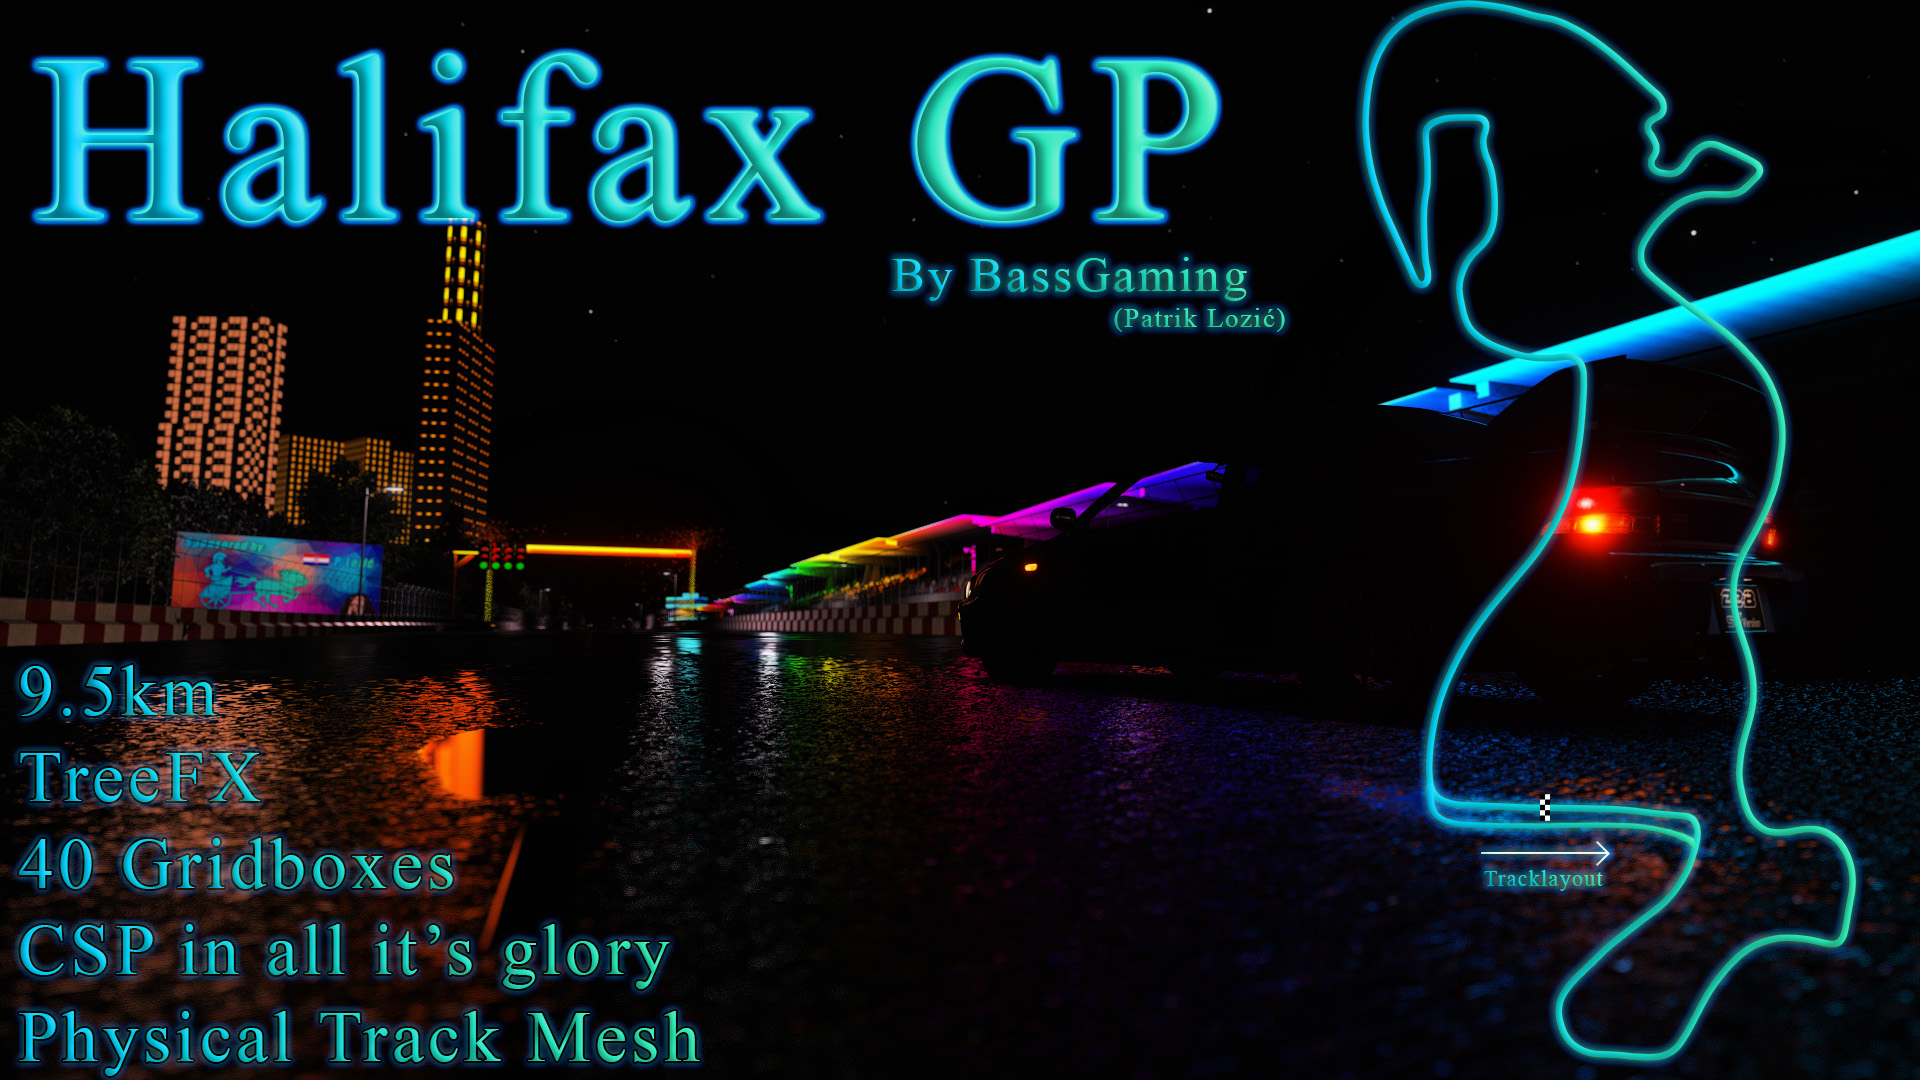 Halifax GP Title Picture.jpg